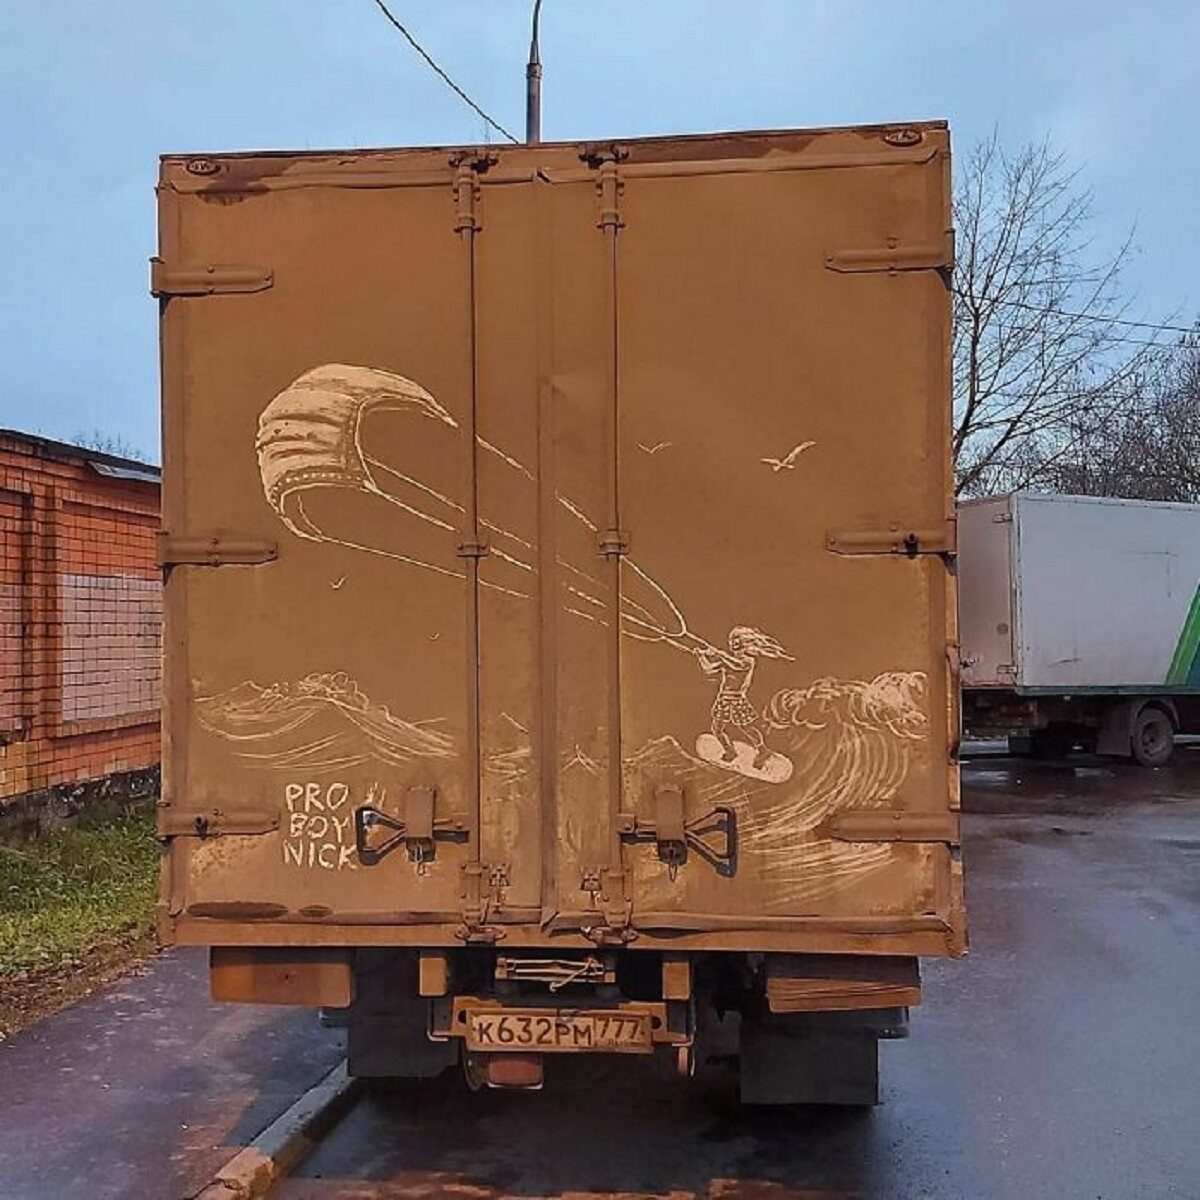 Nikita Golubev artista russa cria desenhos incriveis em caminhoes e tecnica chama atencao 20